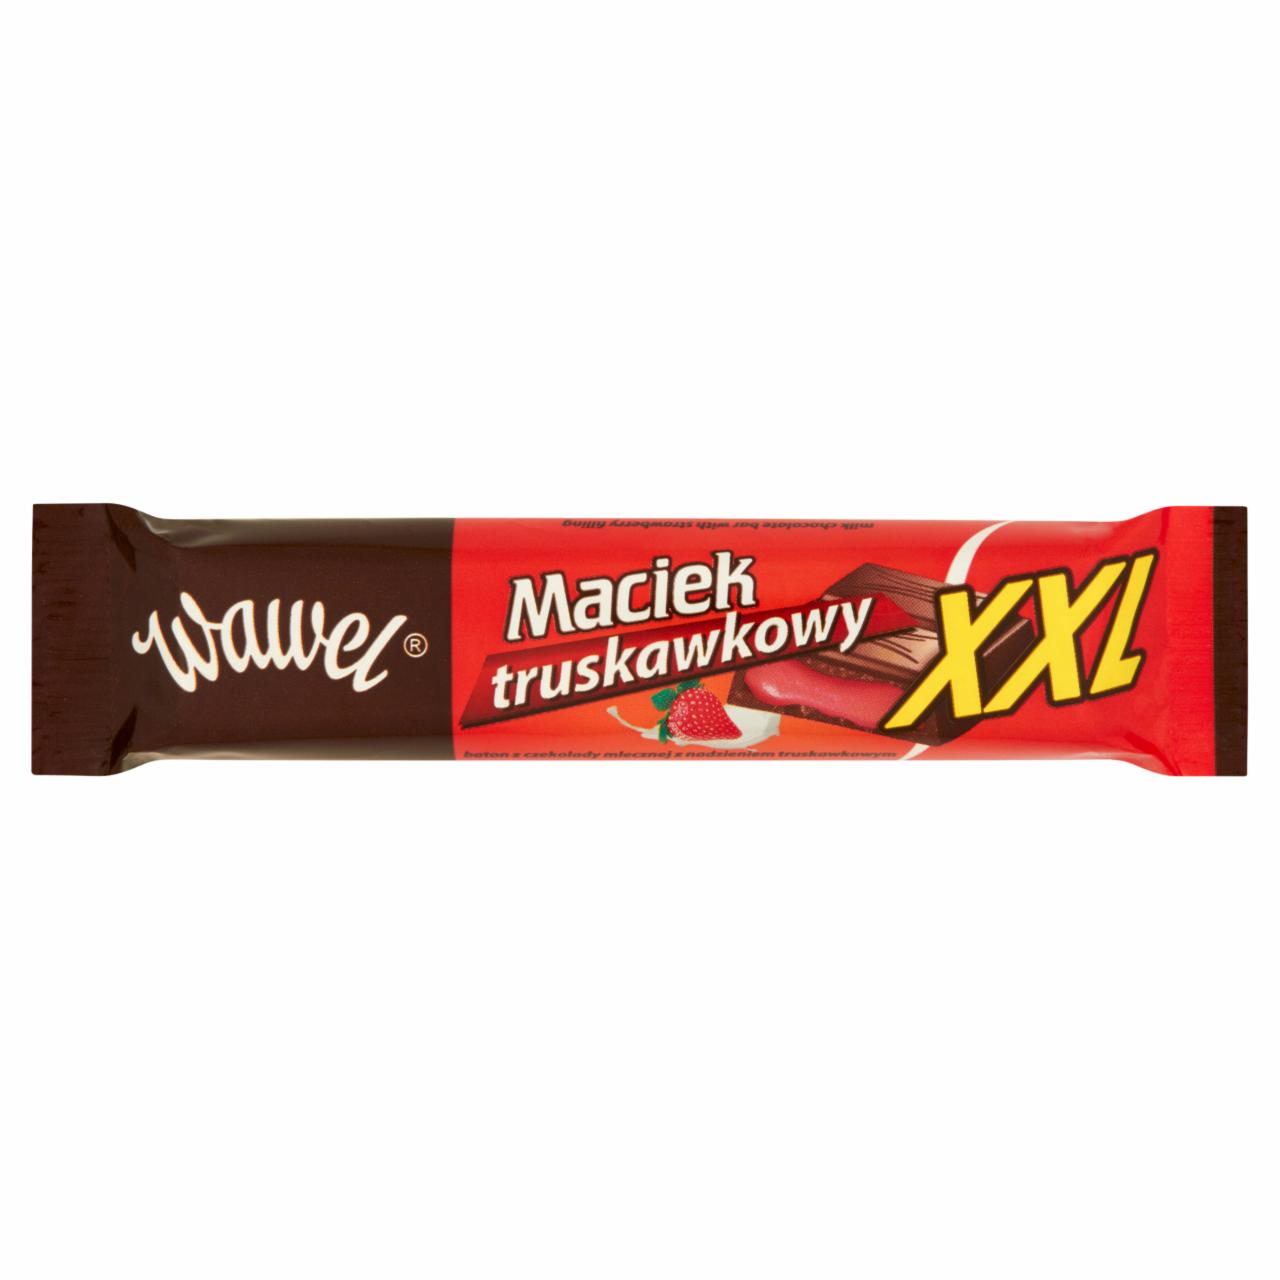 Zdjęcia - Wawel Maciek truskawkowy XXL Baton z czekolady mlecznej z nadzieniem truskawkowym 47 g